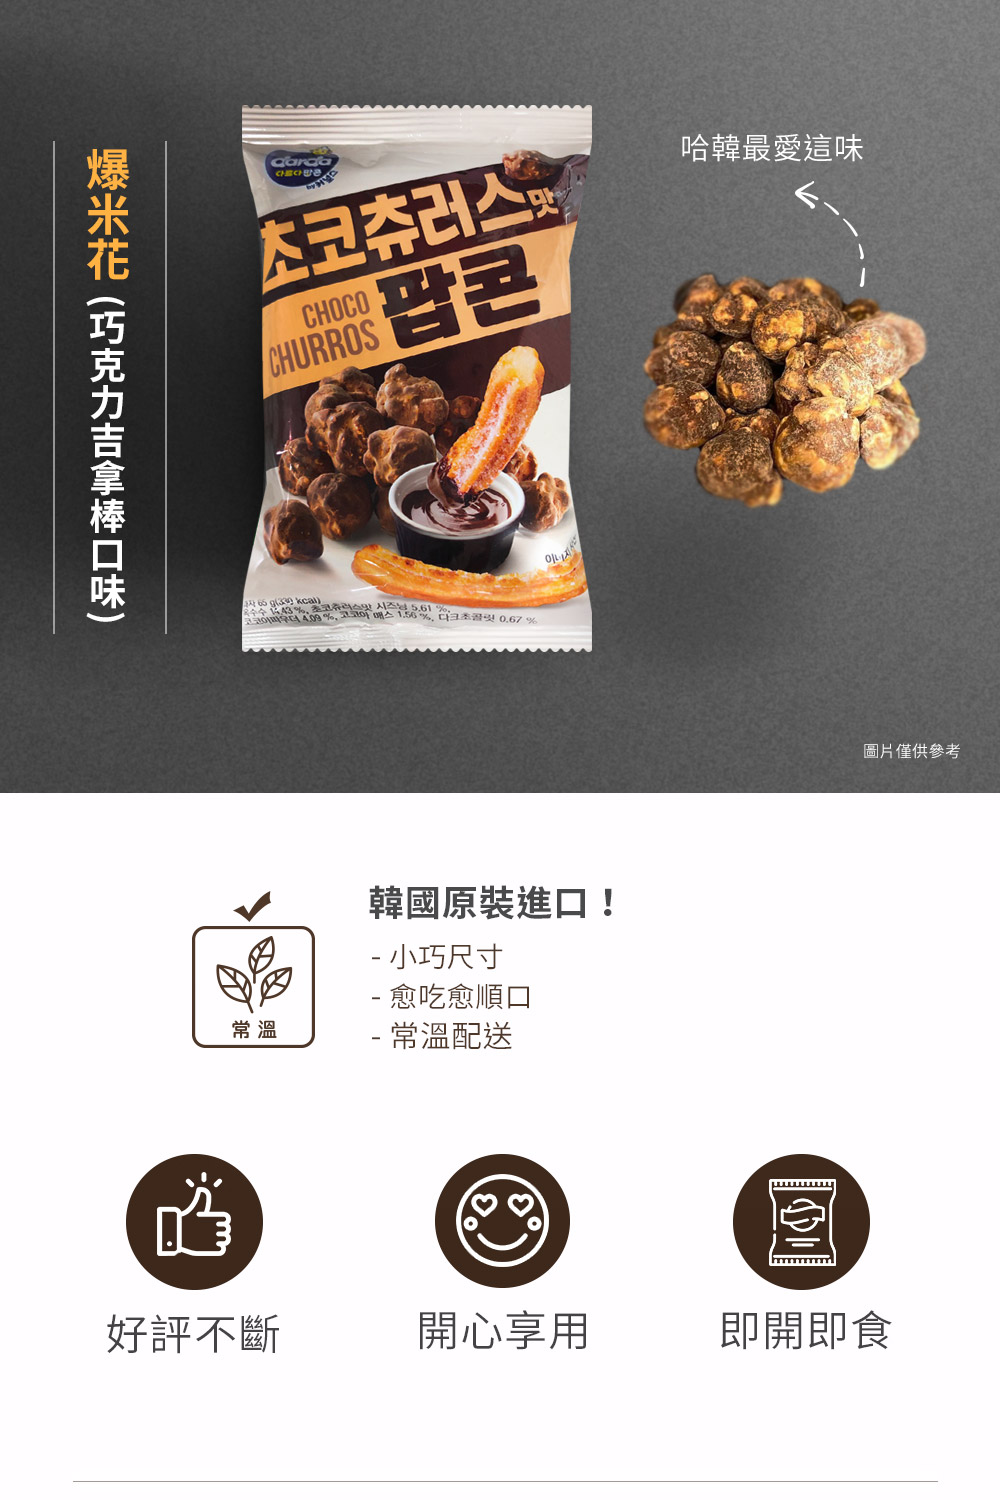 【韓味不二】韓國 巧克力吉拿棒口味爆米花65g 買一送一